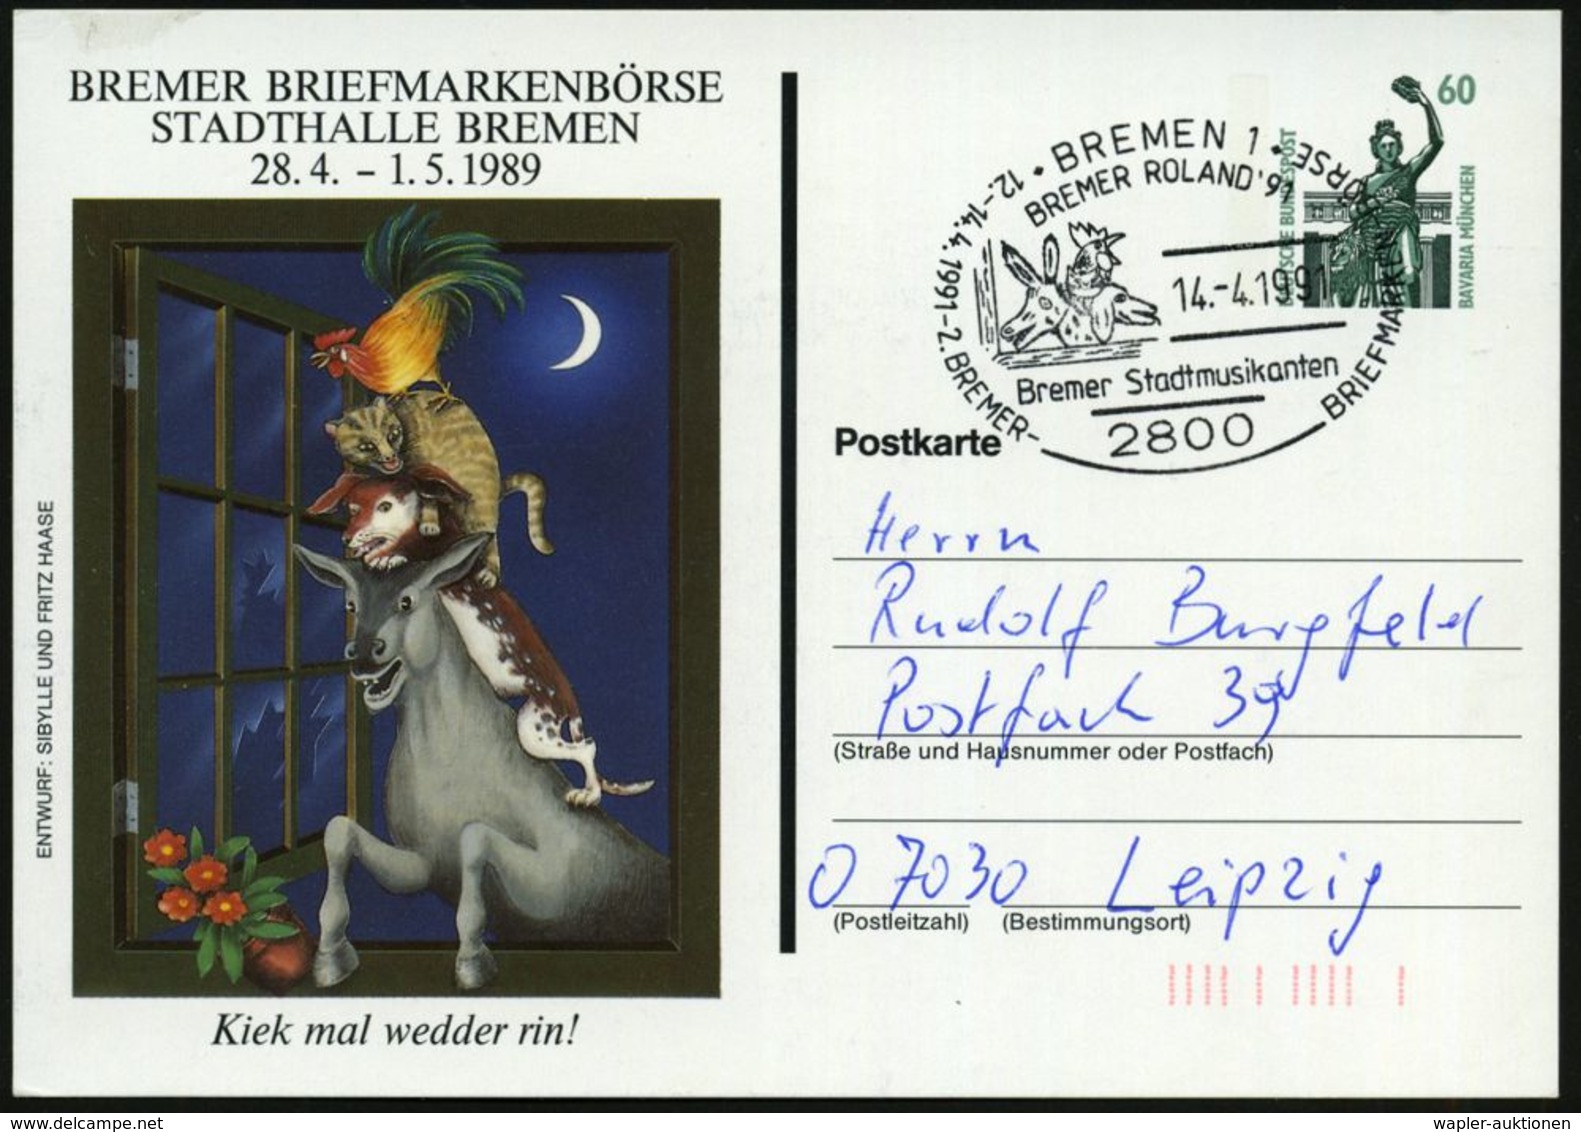 MÄRCHEN / SAGEN / FABELWESEN : 2800 BREMEN 1/ BREMER ROLAND'91/ Bremer Stadtmusikanten.. 1991 (14.4.) SSt = "Bremer Stad - Schriftsteller